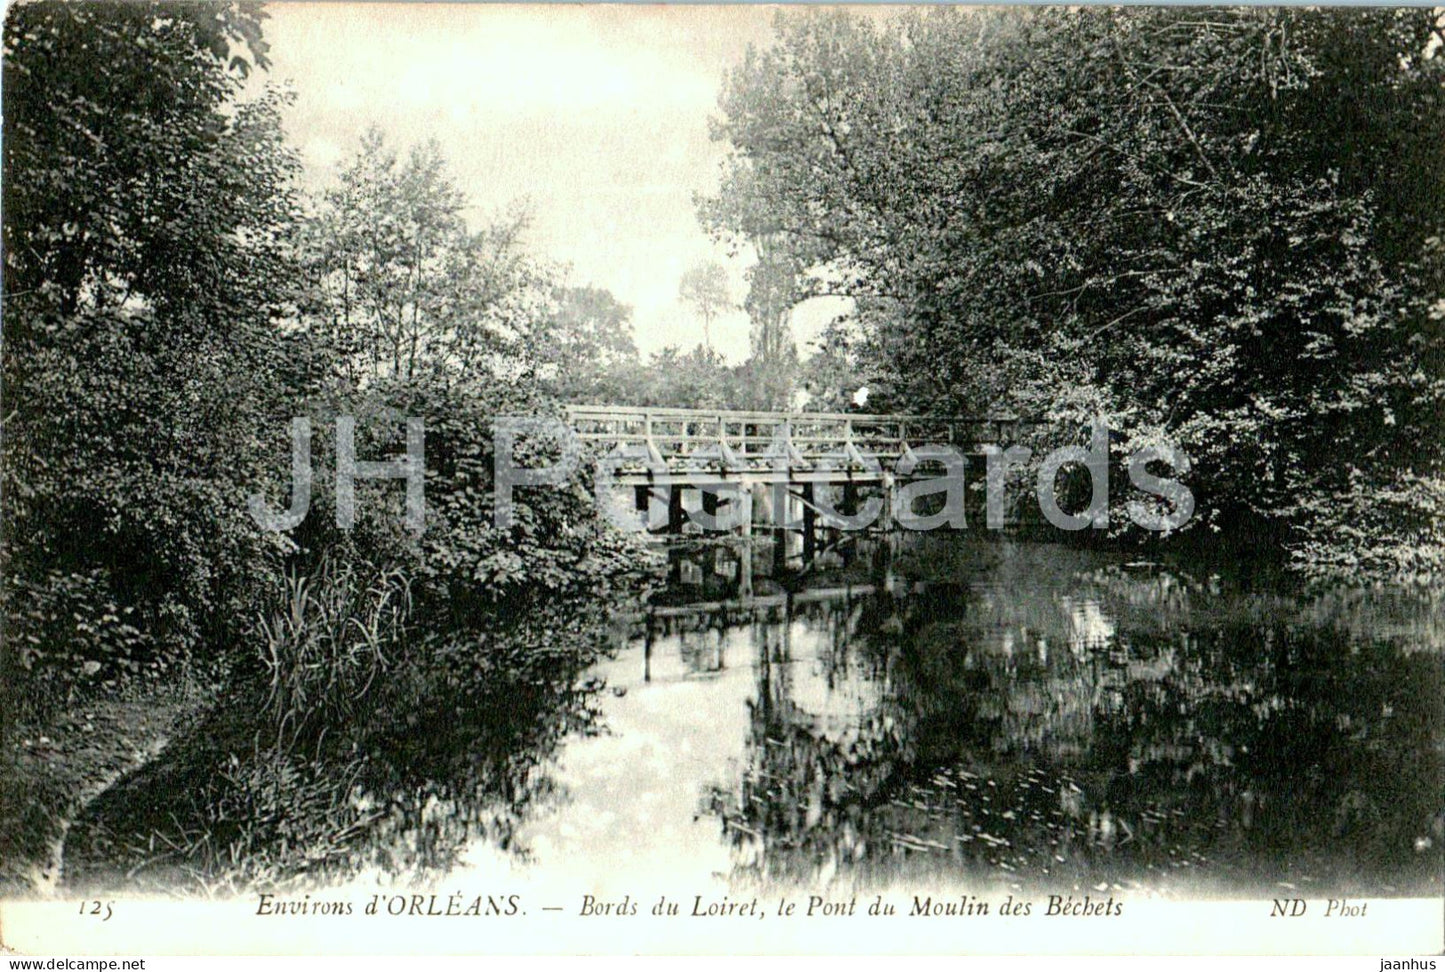 Environs du Loiret le Pont du Moulin des Bechets - bridge - 125 - old postcard - France - unused - JH Postcards